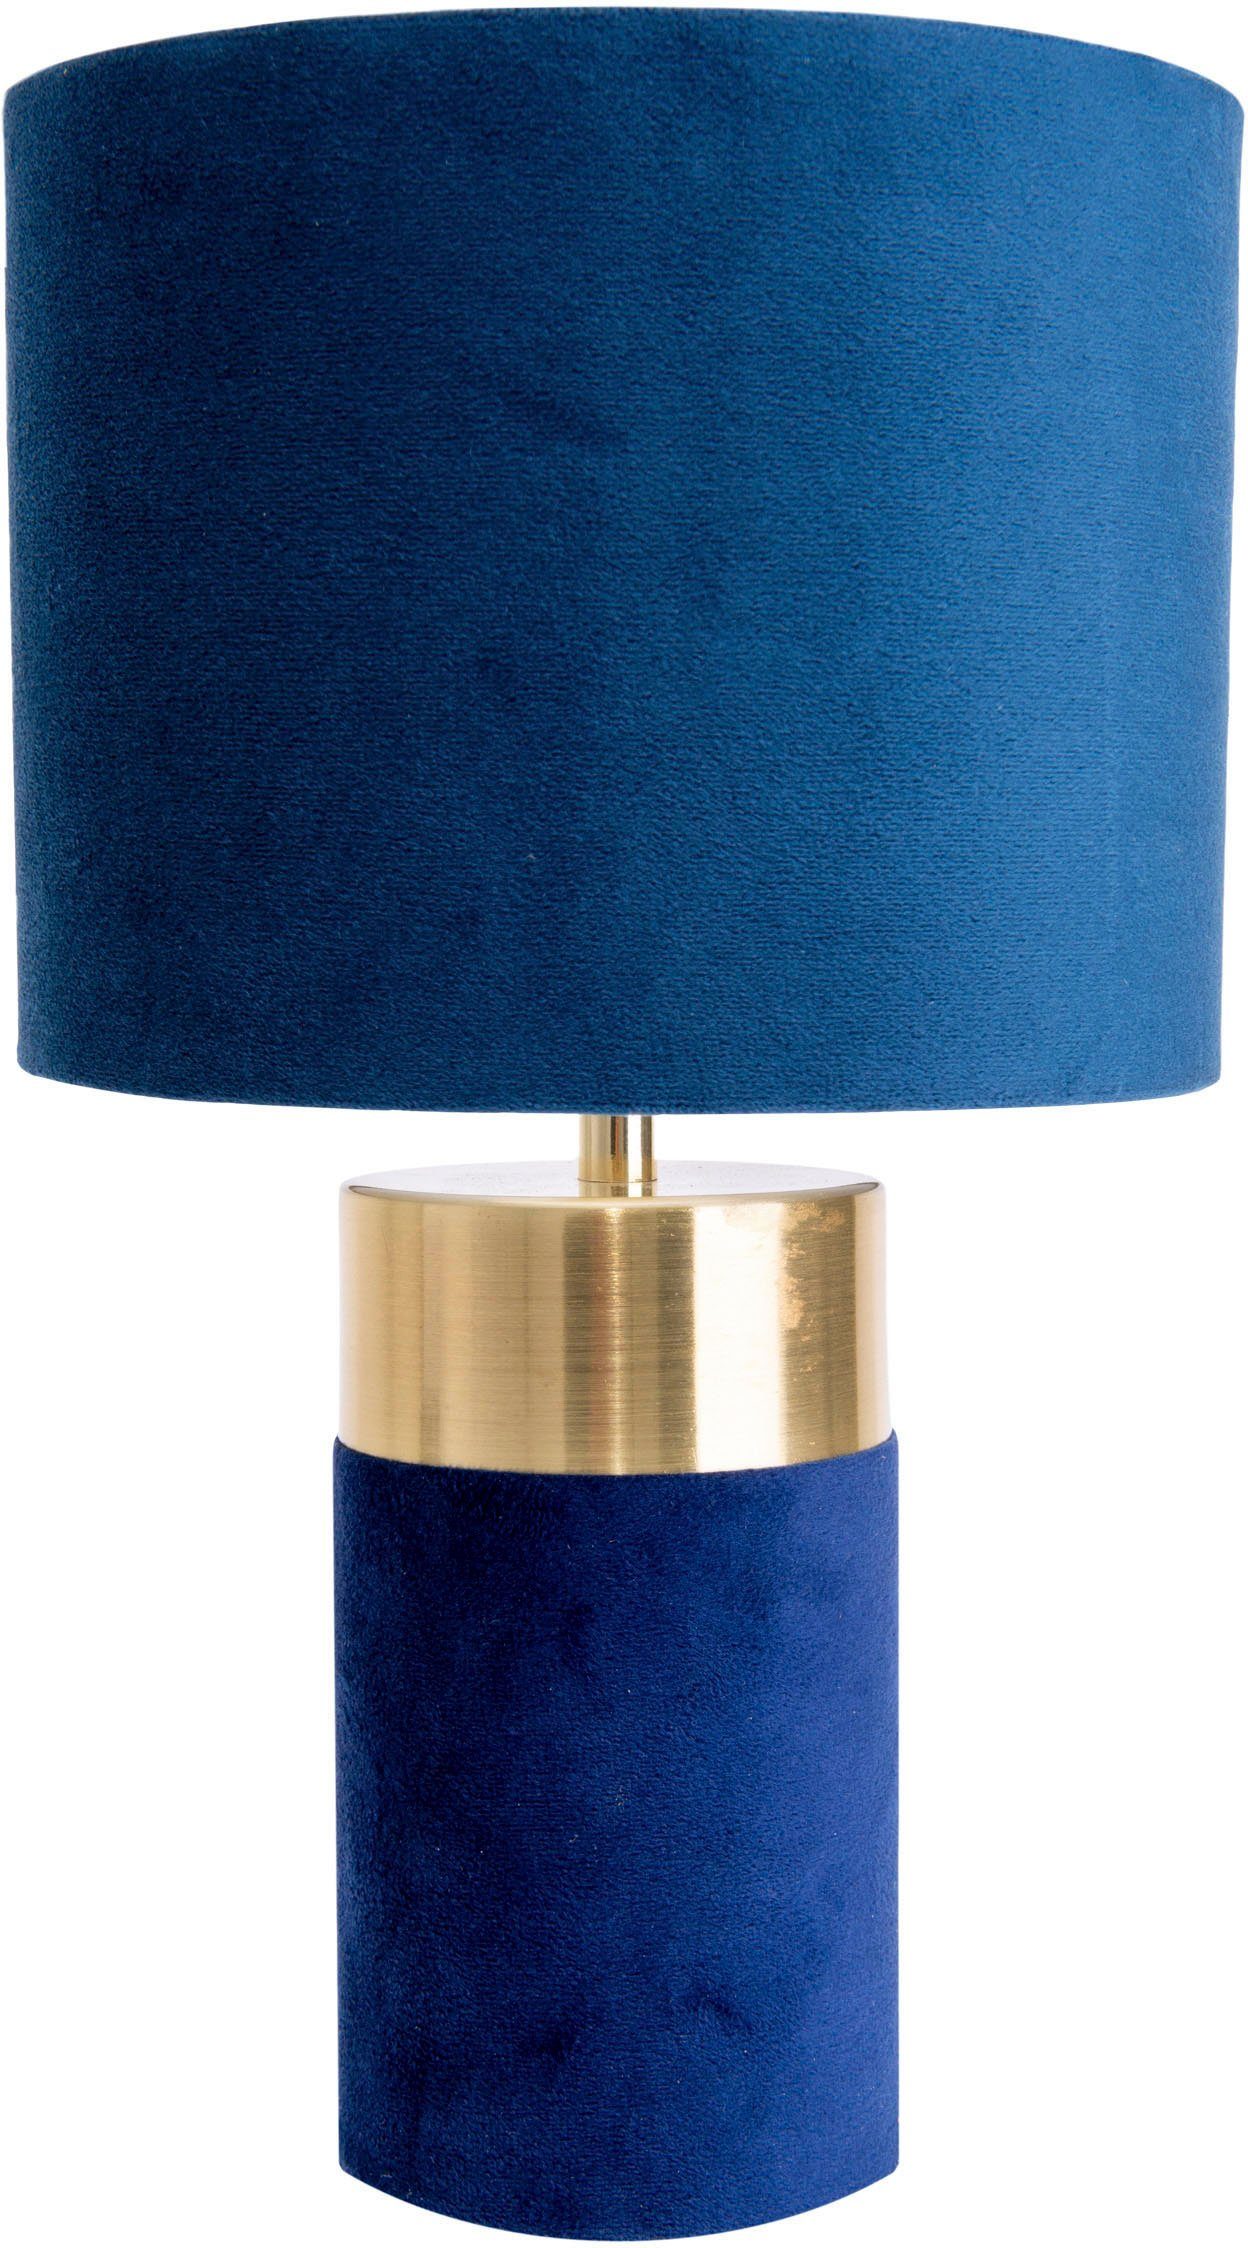 Bordo, blau Zuleitung Leuchtmittel, 150cm gold, blau, ohne 1xE14, Höhe Fuß Tischleuchte Textilschirm näve 32cm,